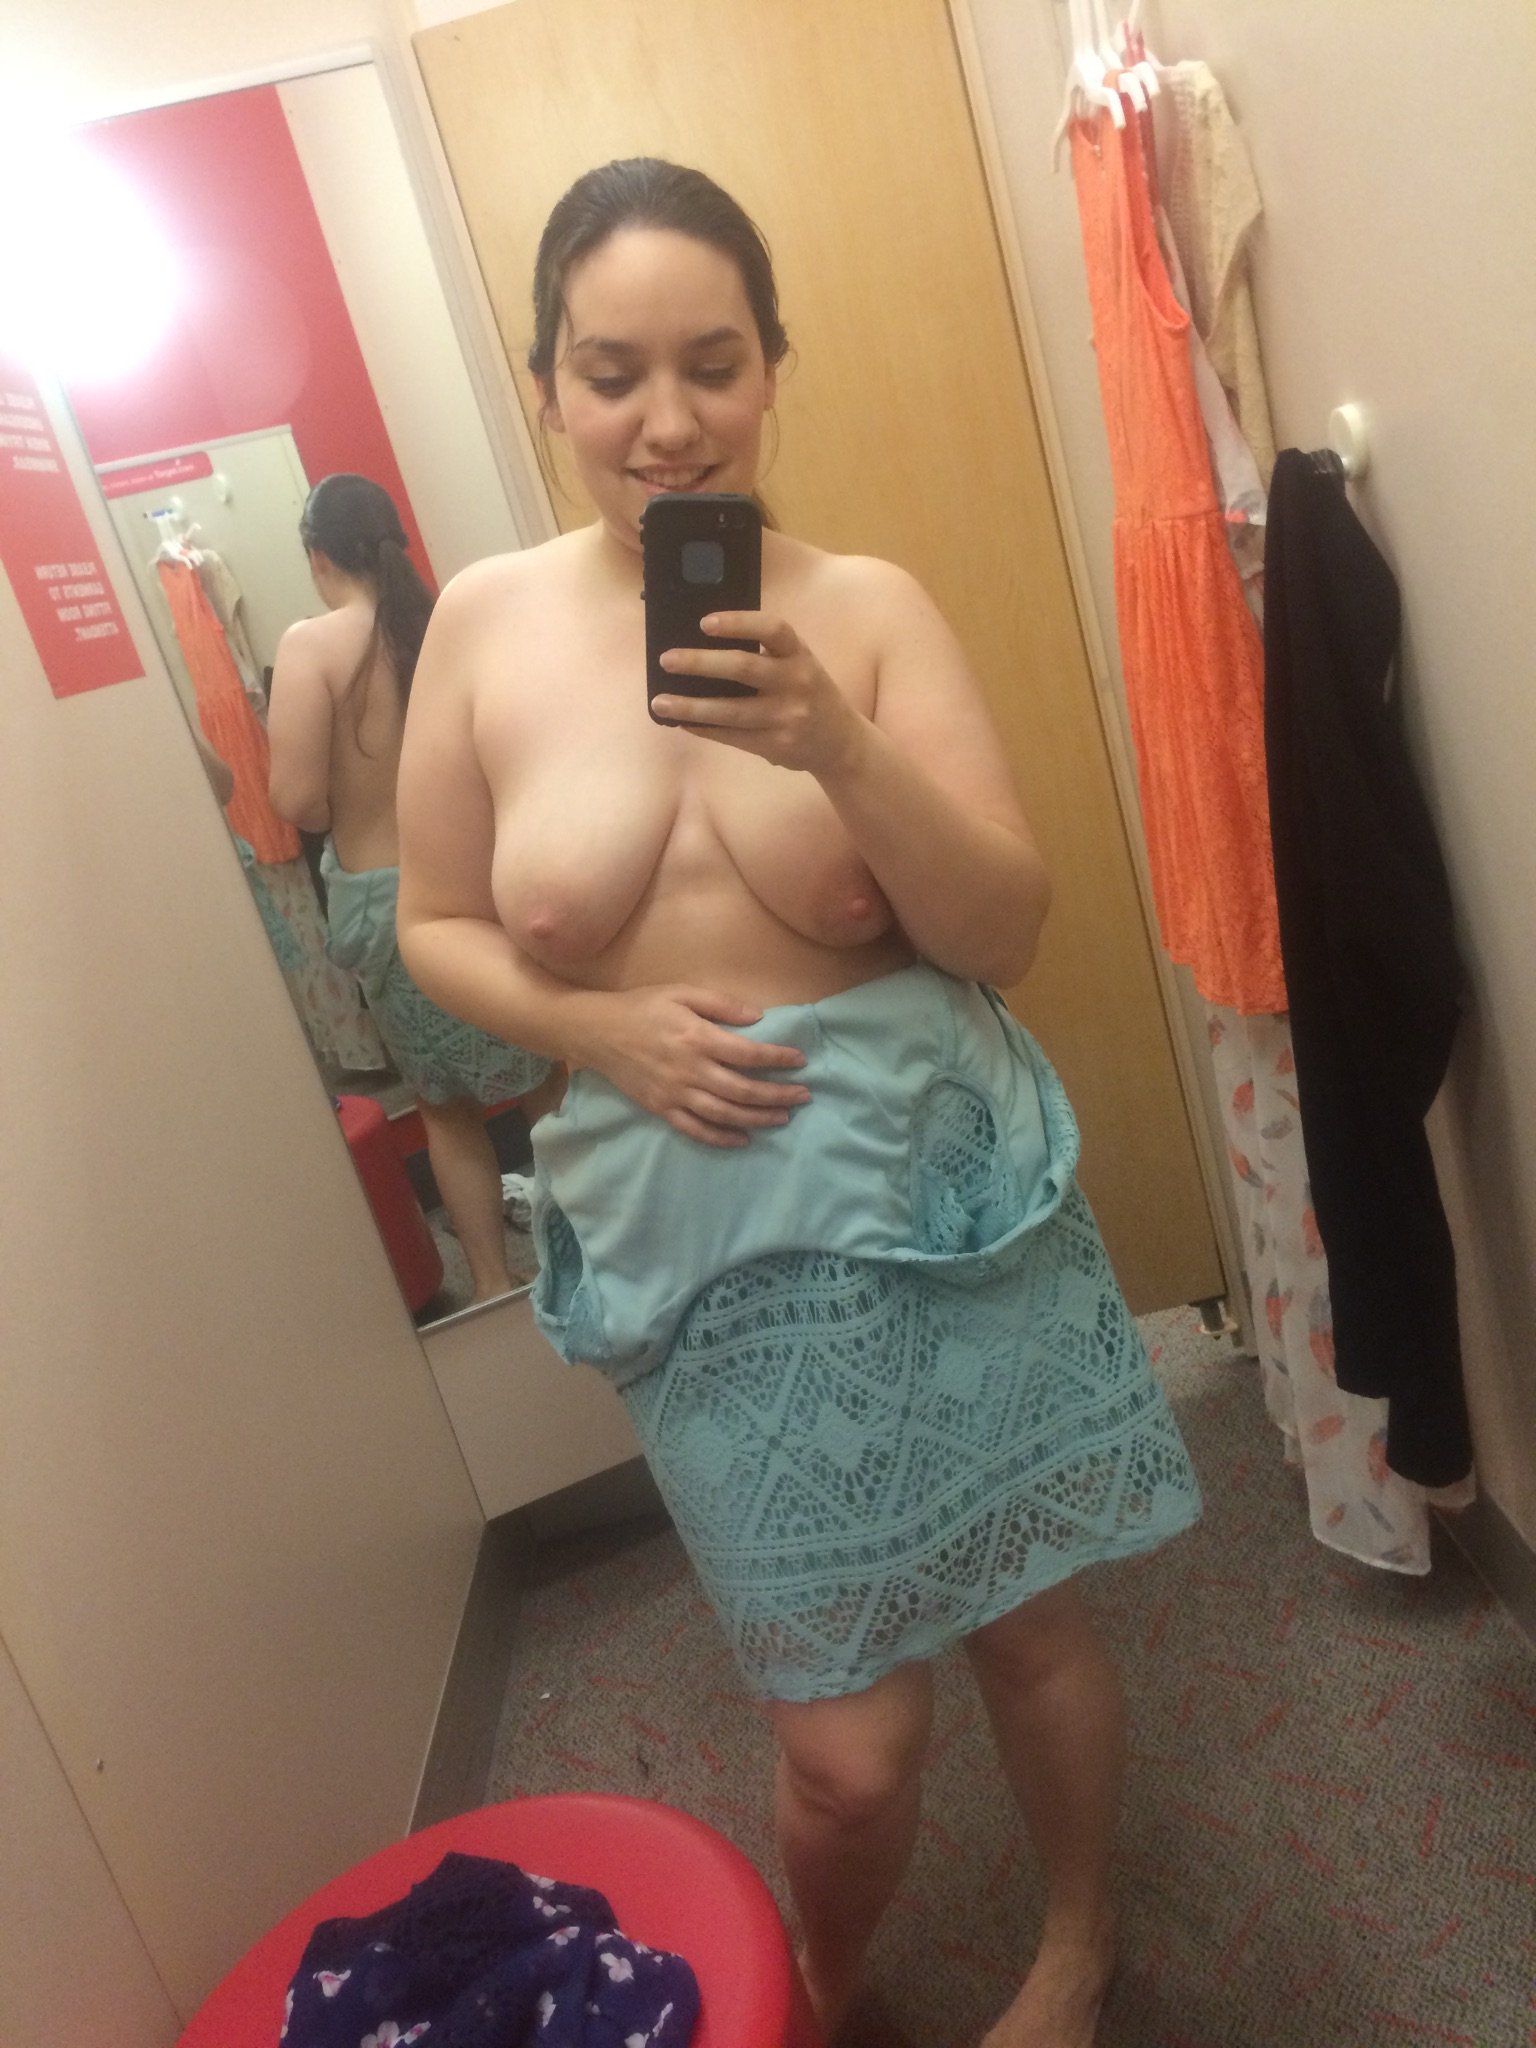 Dressing room pics slut